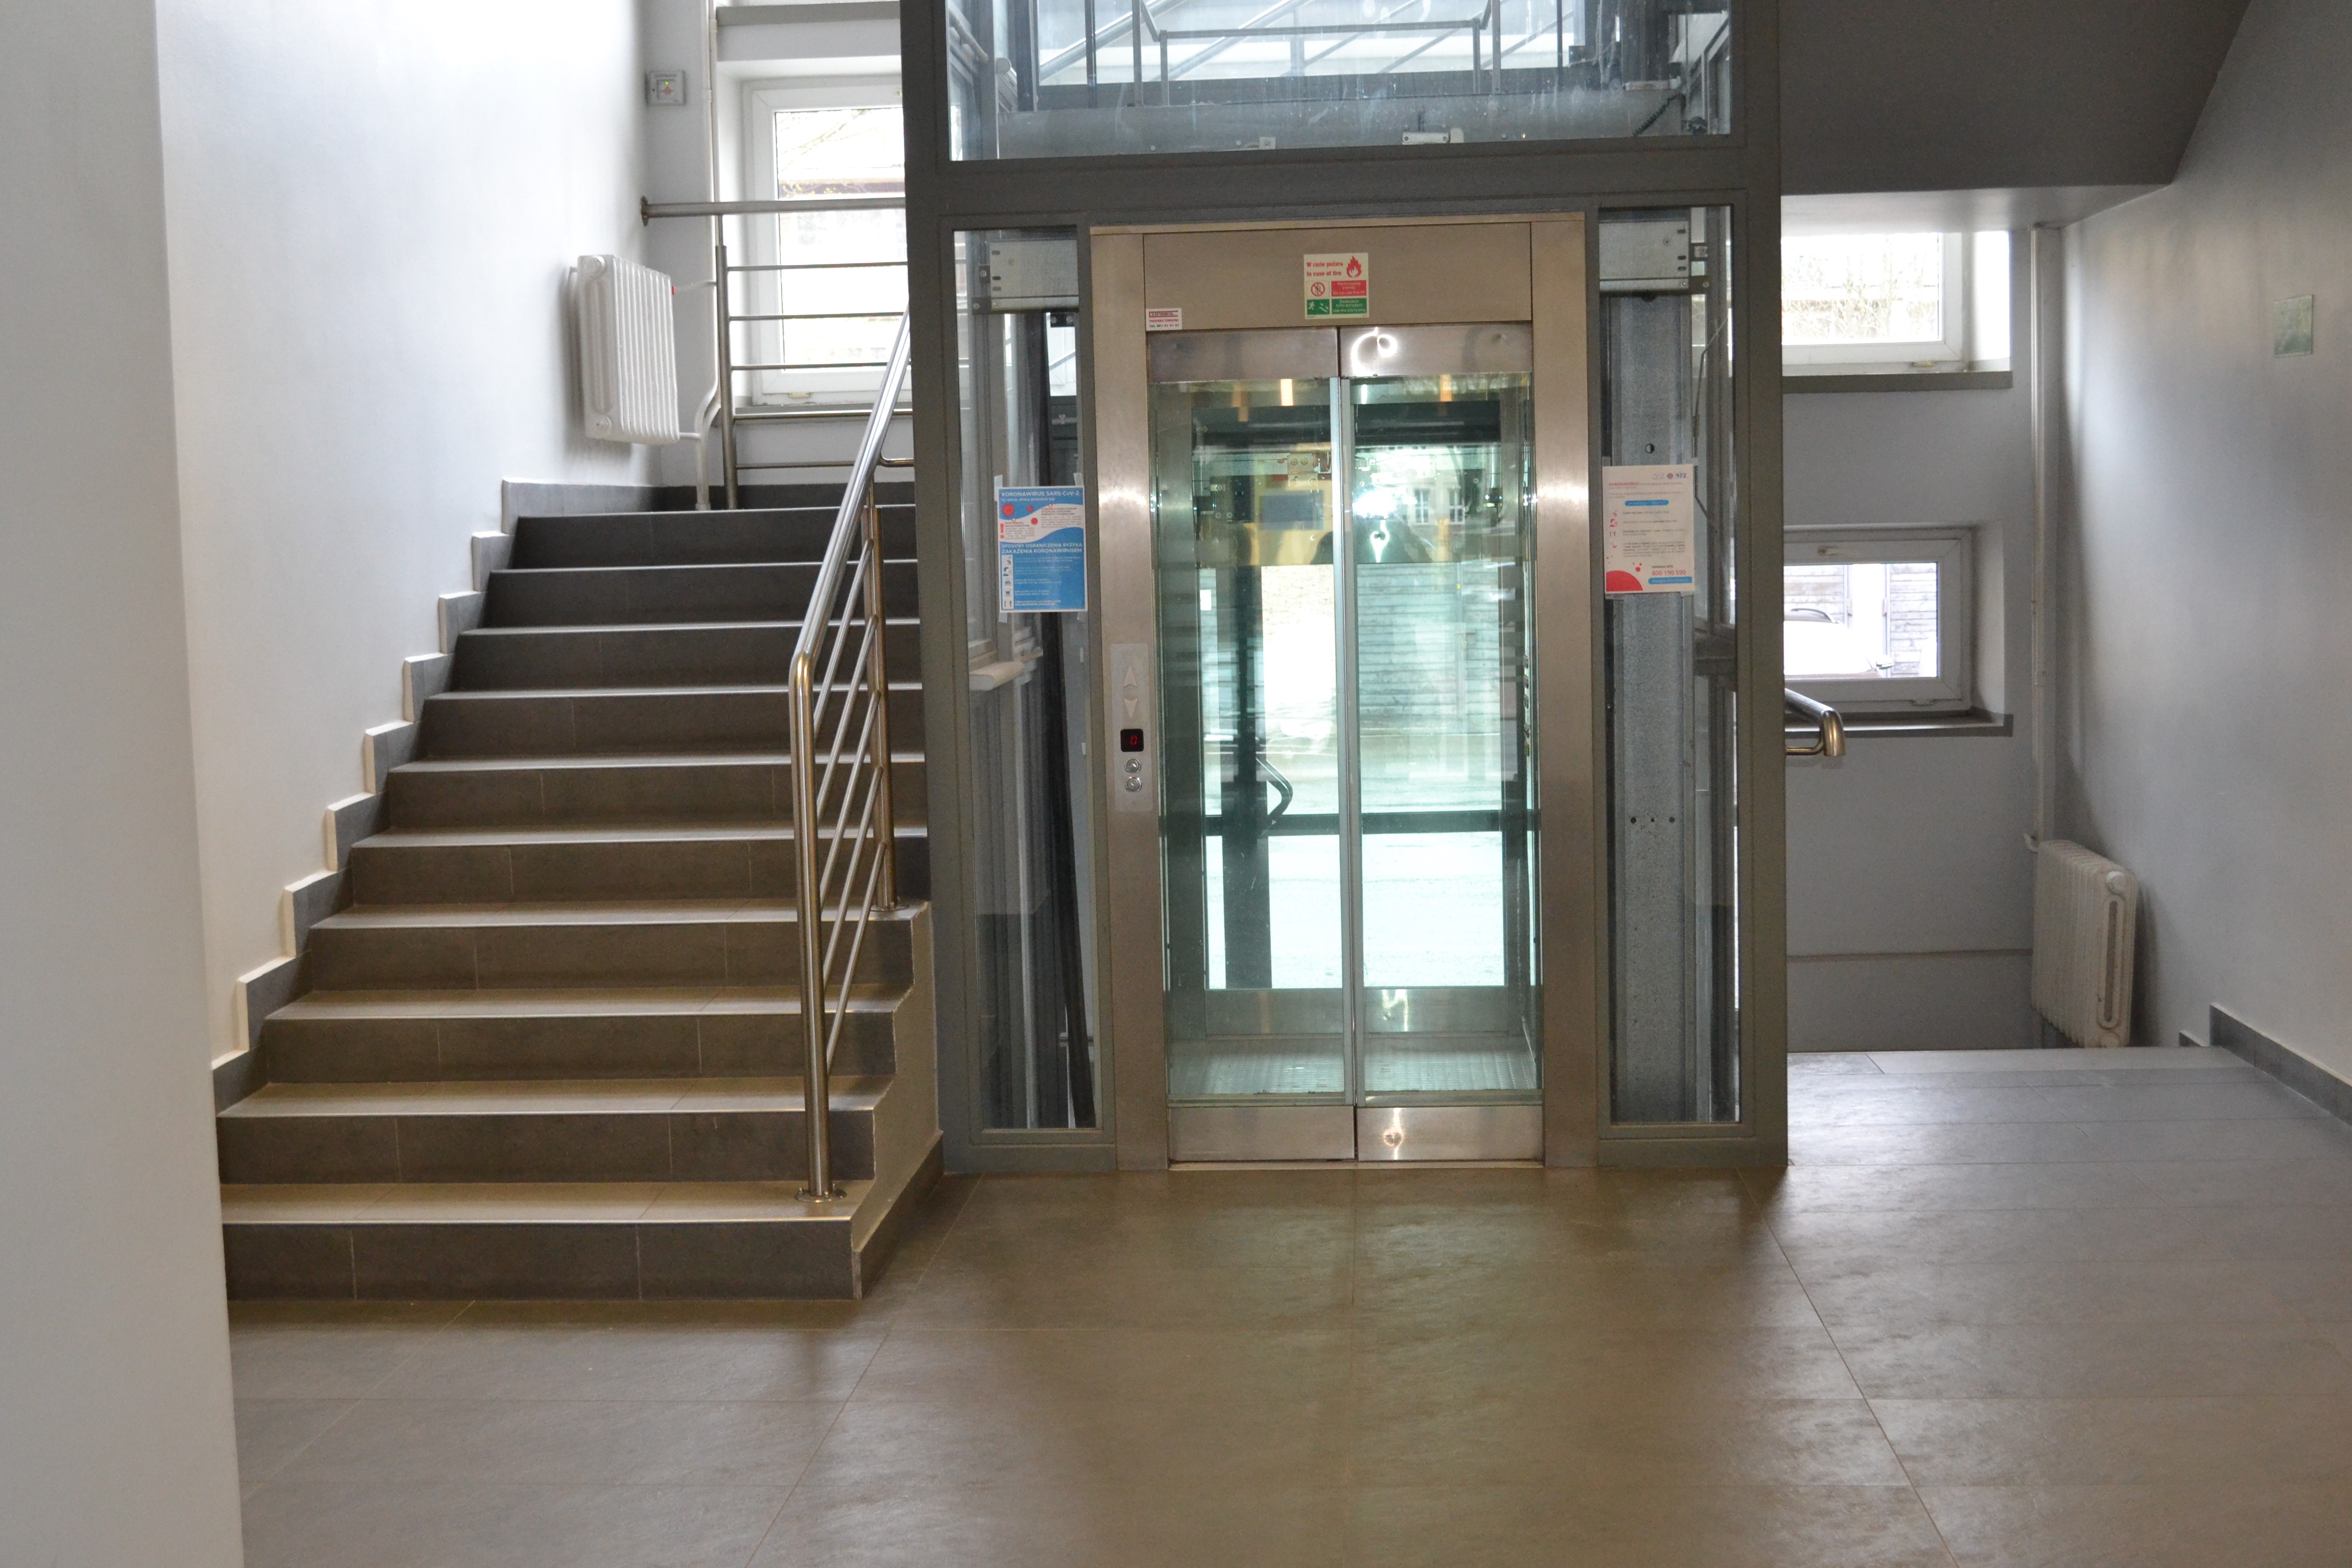 Wejście do windy wewnątrz budynku. Szerokie, przeszklone drzwi prowadzą do przestronnej, przeszklonej kabiny. Szyb windy otoczony jest klatką schodową